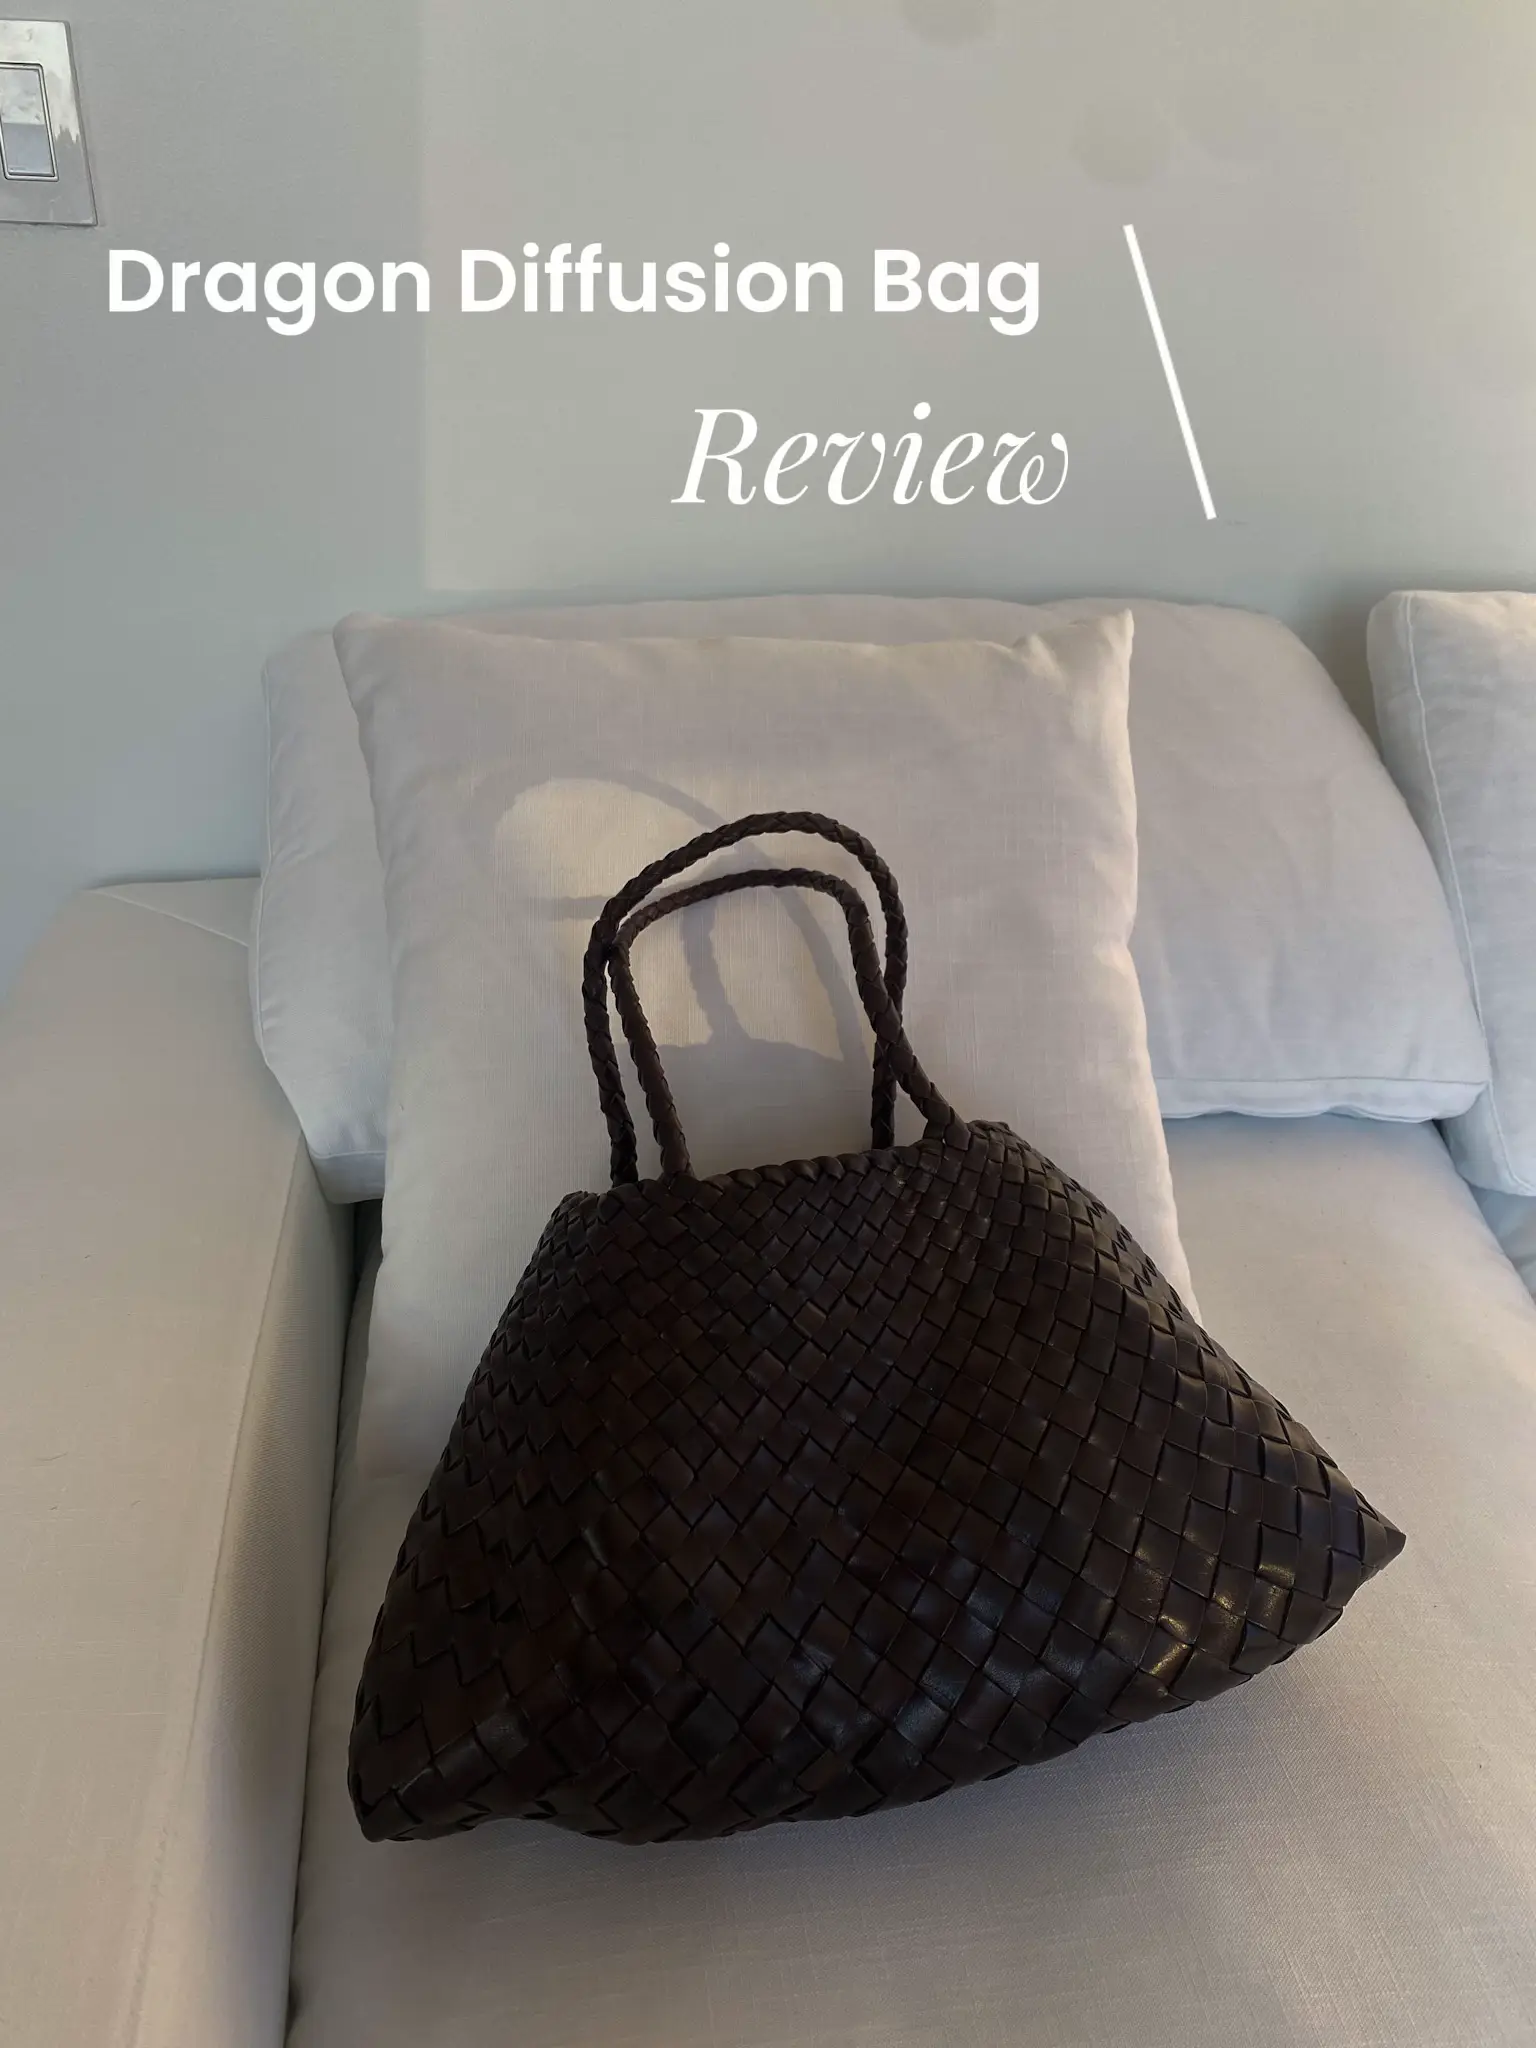 Dragon Diffusion Bag Review